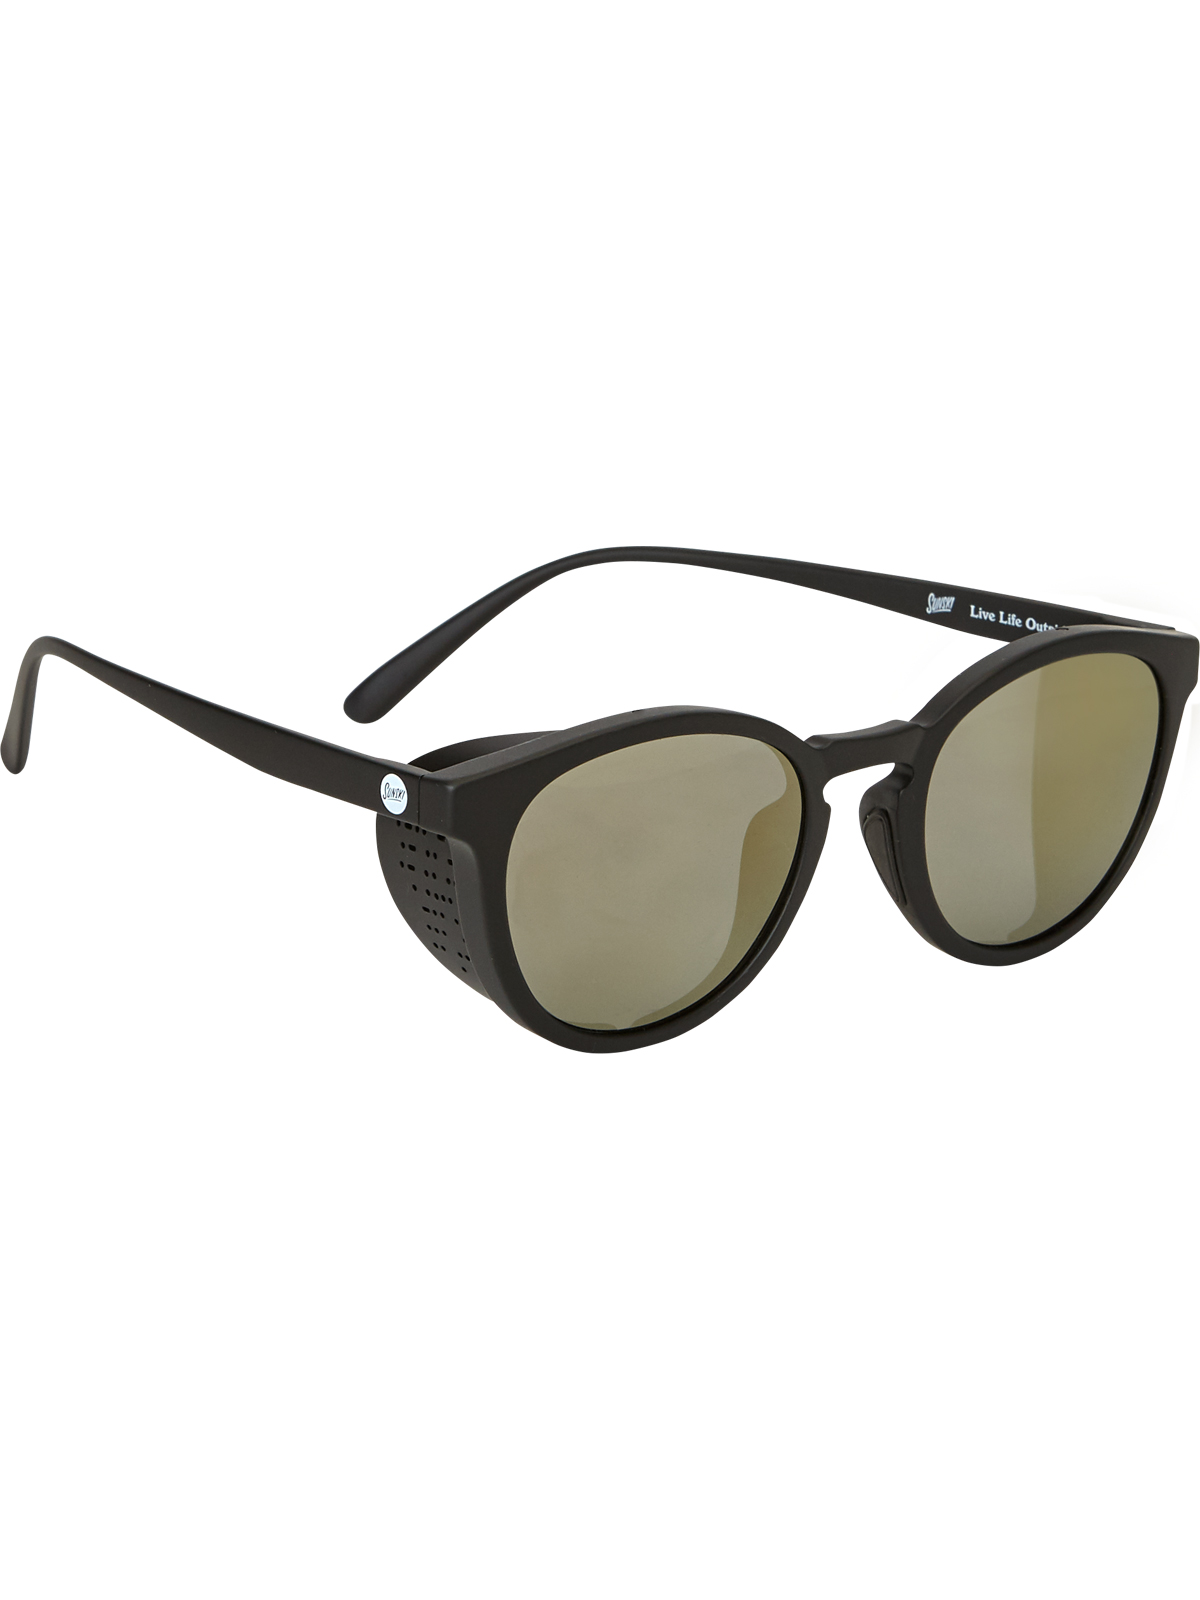 Sunski Tera Premium Sunglasses: Eye Spy | Title Nine